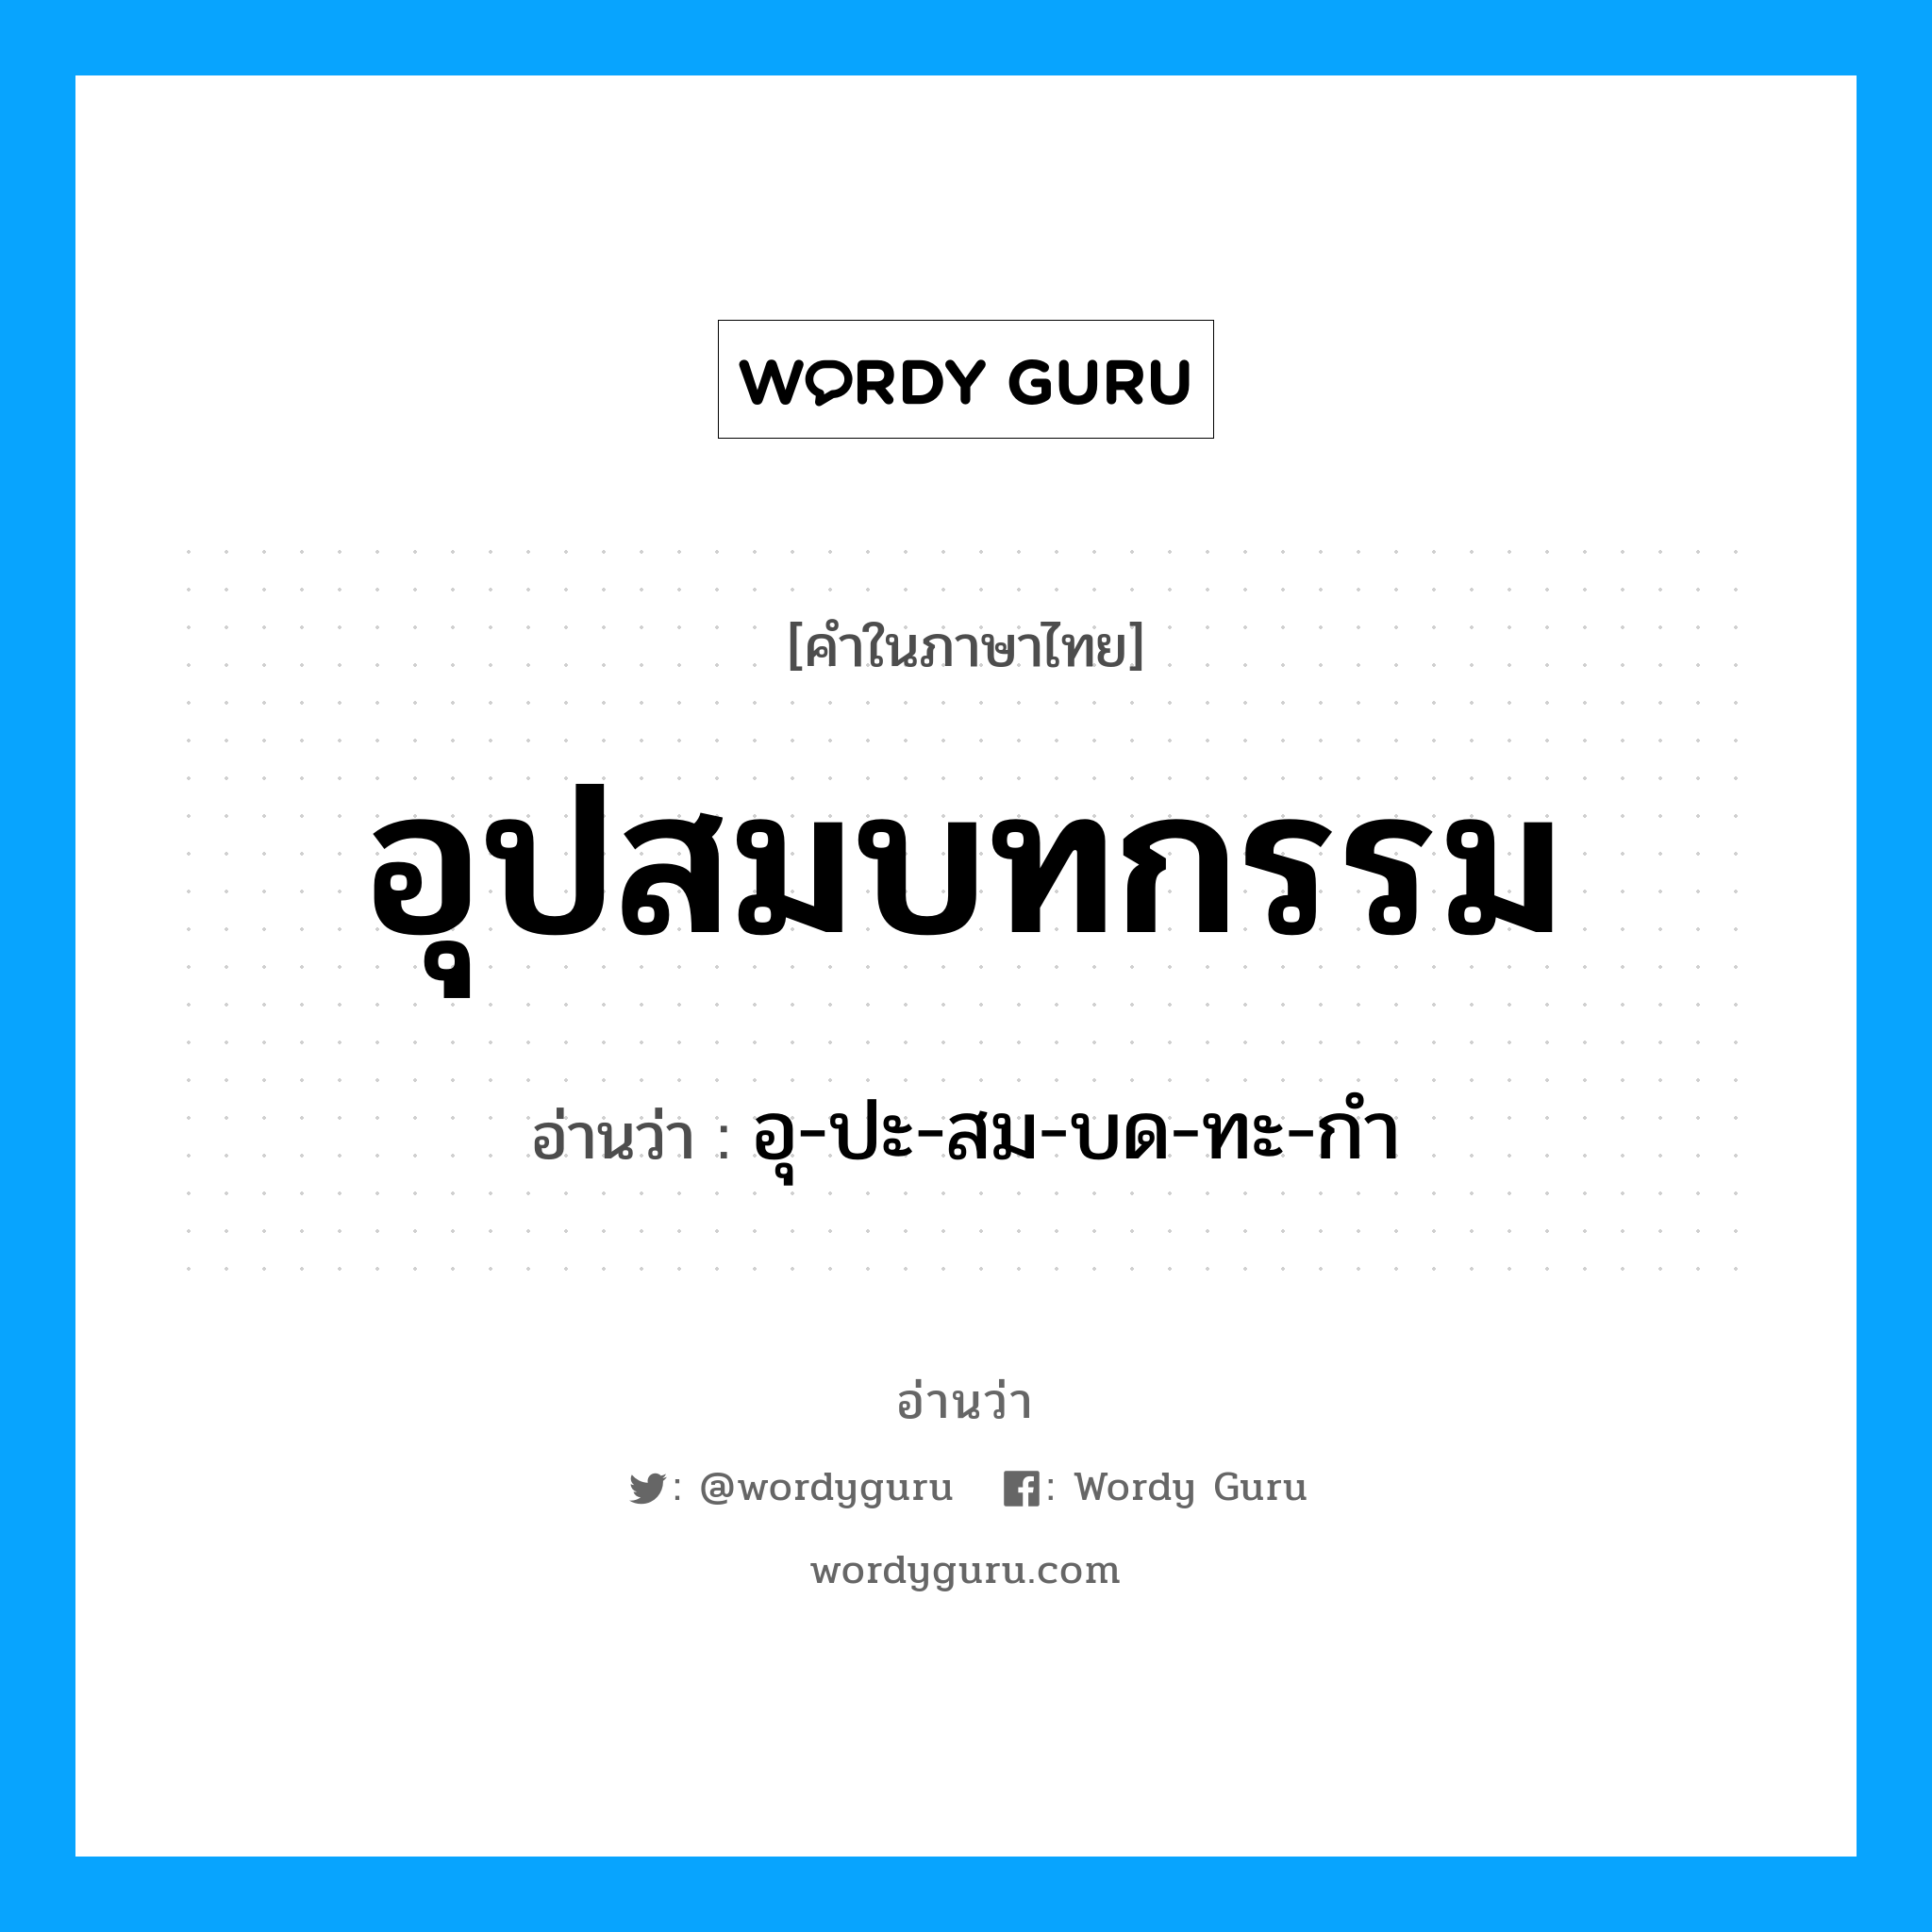 อุ-ปะ-สม-บด-ทะ-กำ เป็นคำอ่านของคำไหน?, คำในภาษาไทย อุ-ปะ-สม-บด-ทะ-กำ อ่านว่า อุปสมบทกรรม